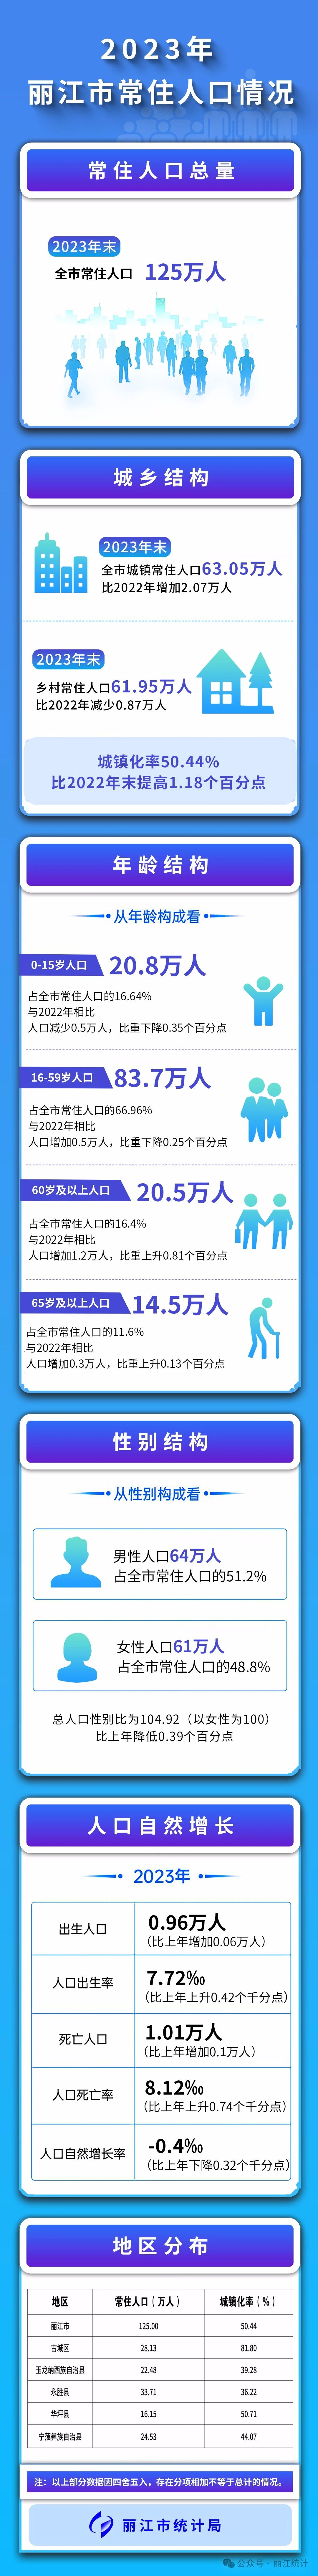 2023年丽江市常住人口主要数据公报.jpg